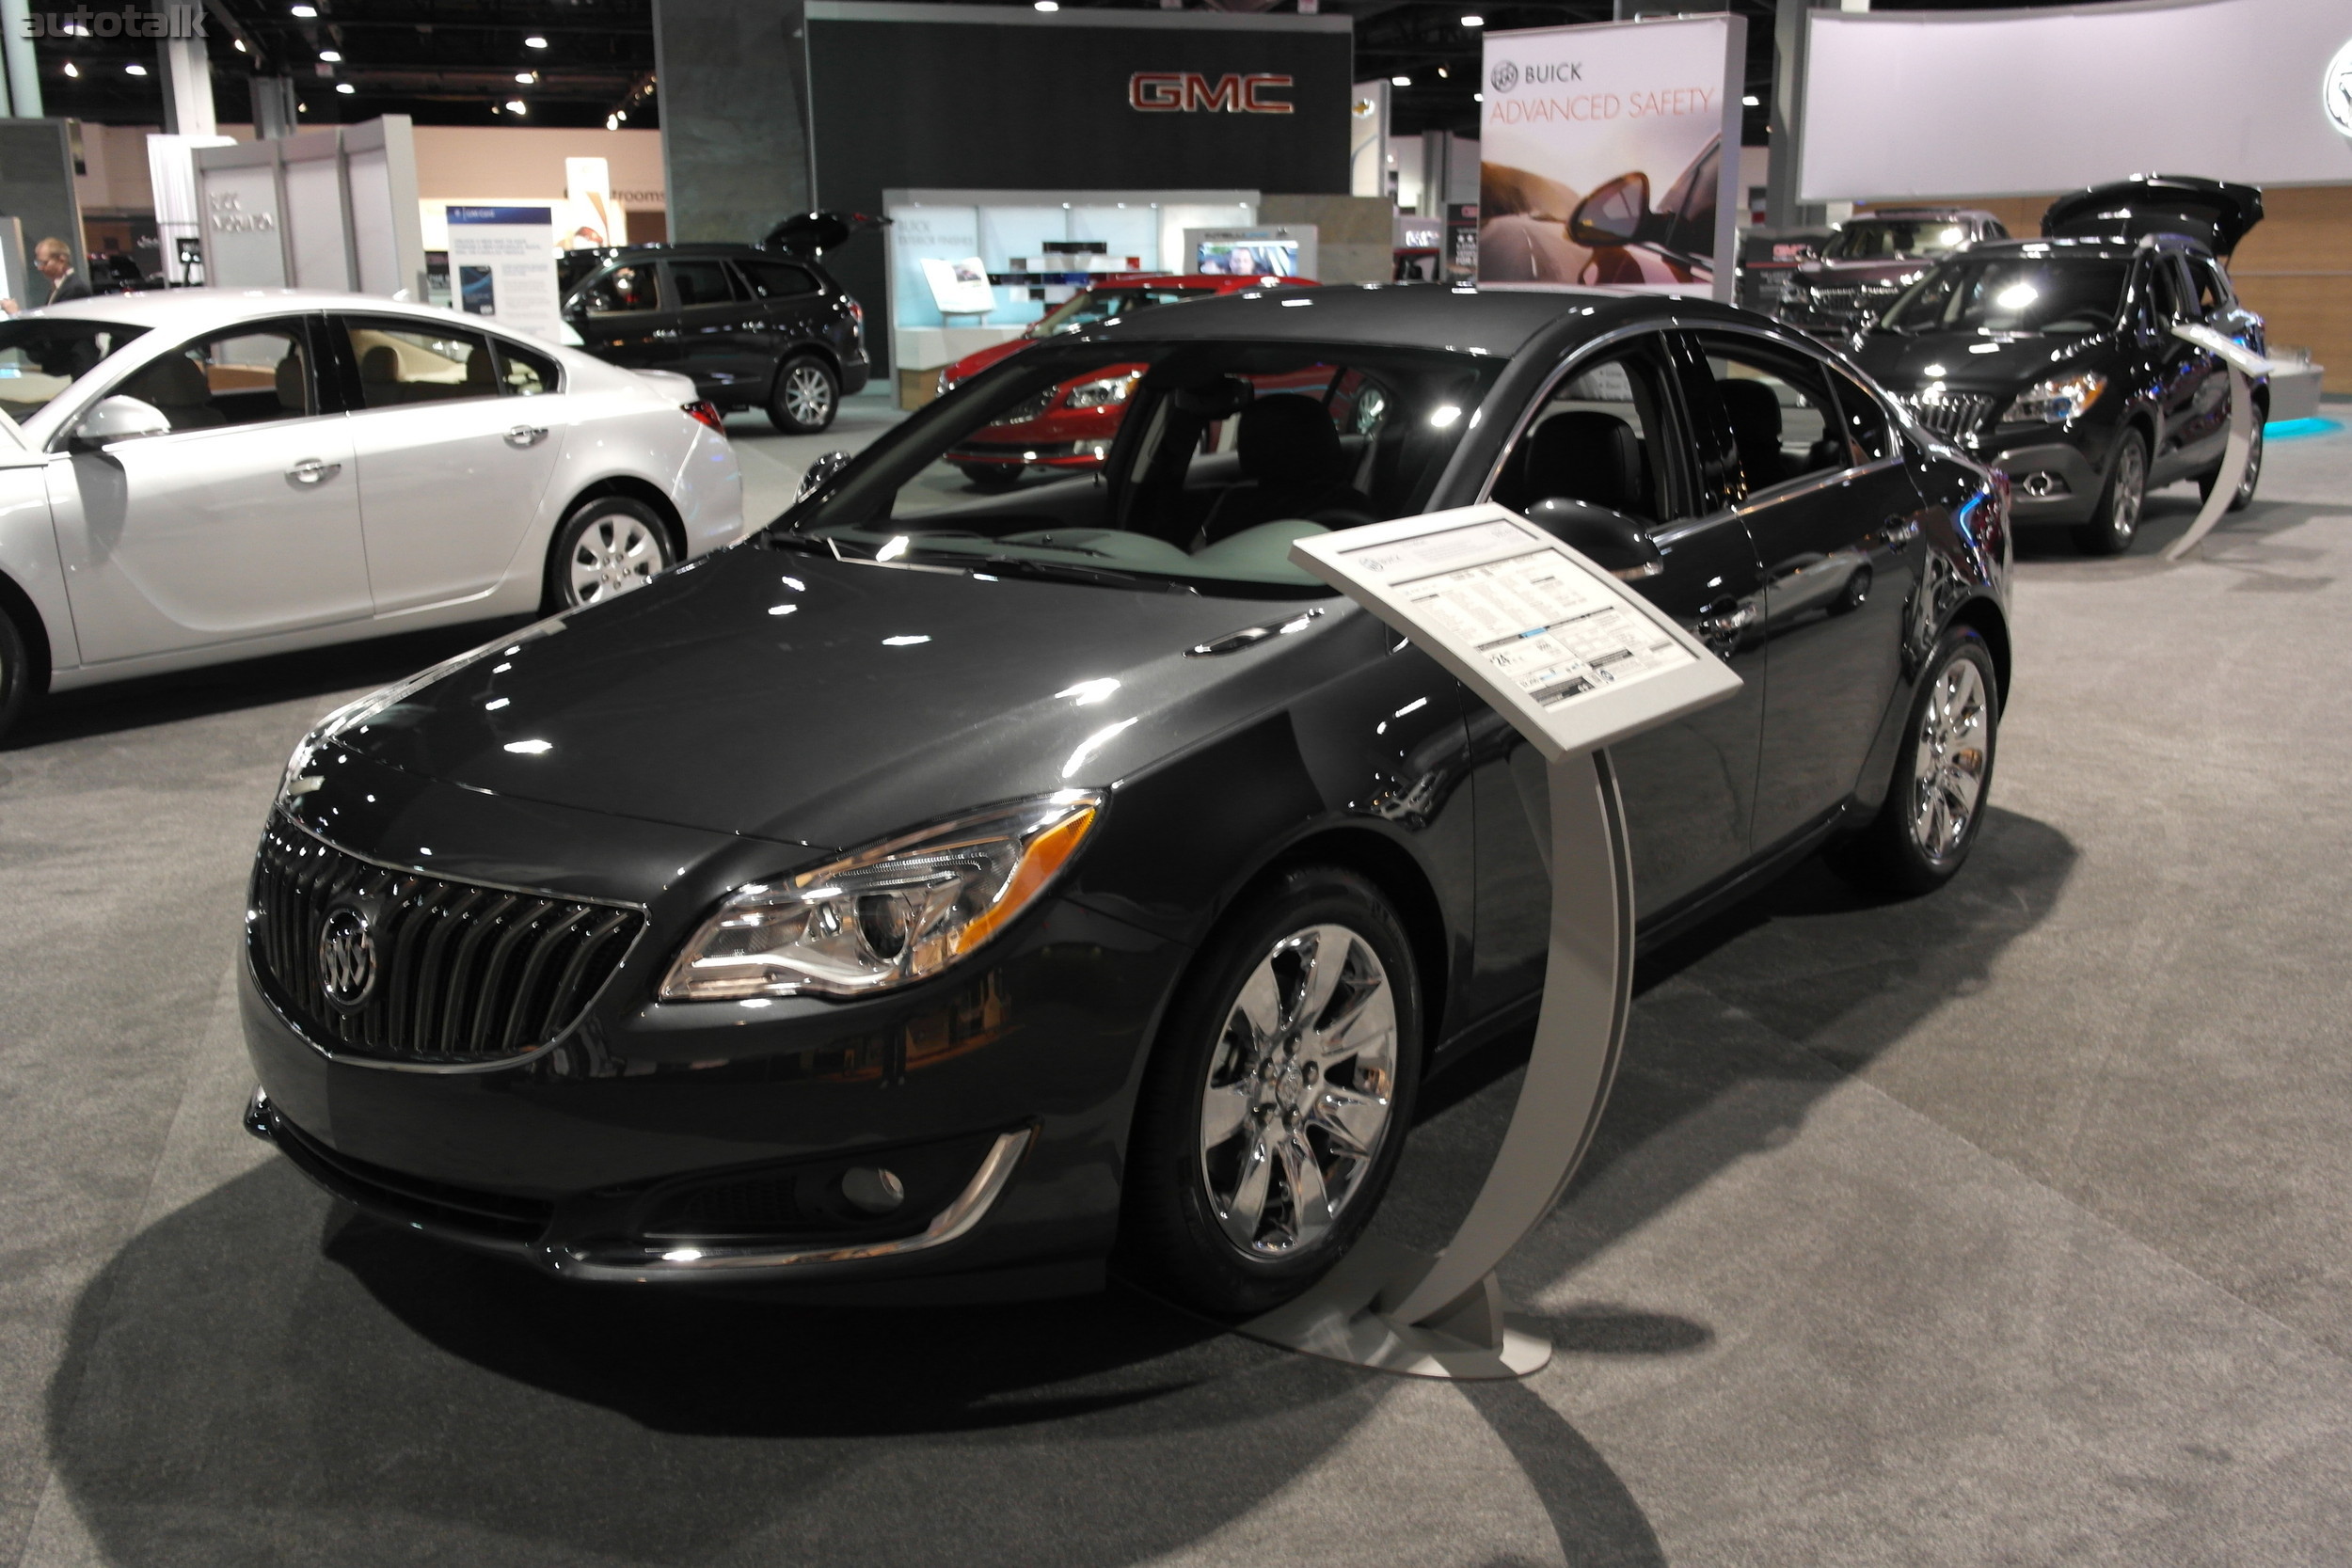 Buick at 2014 Atlanta Auto Show